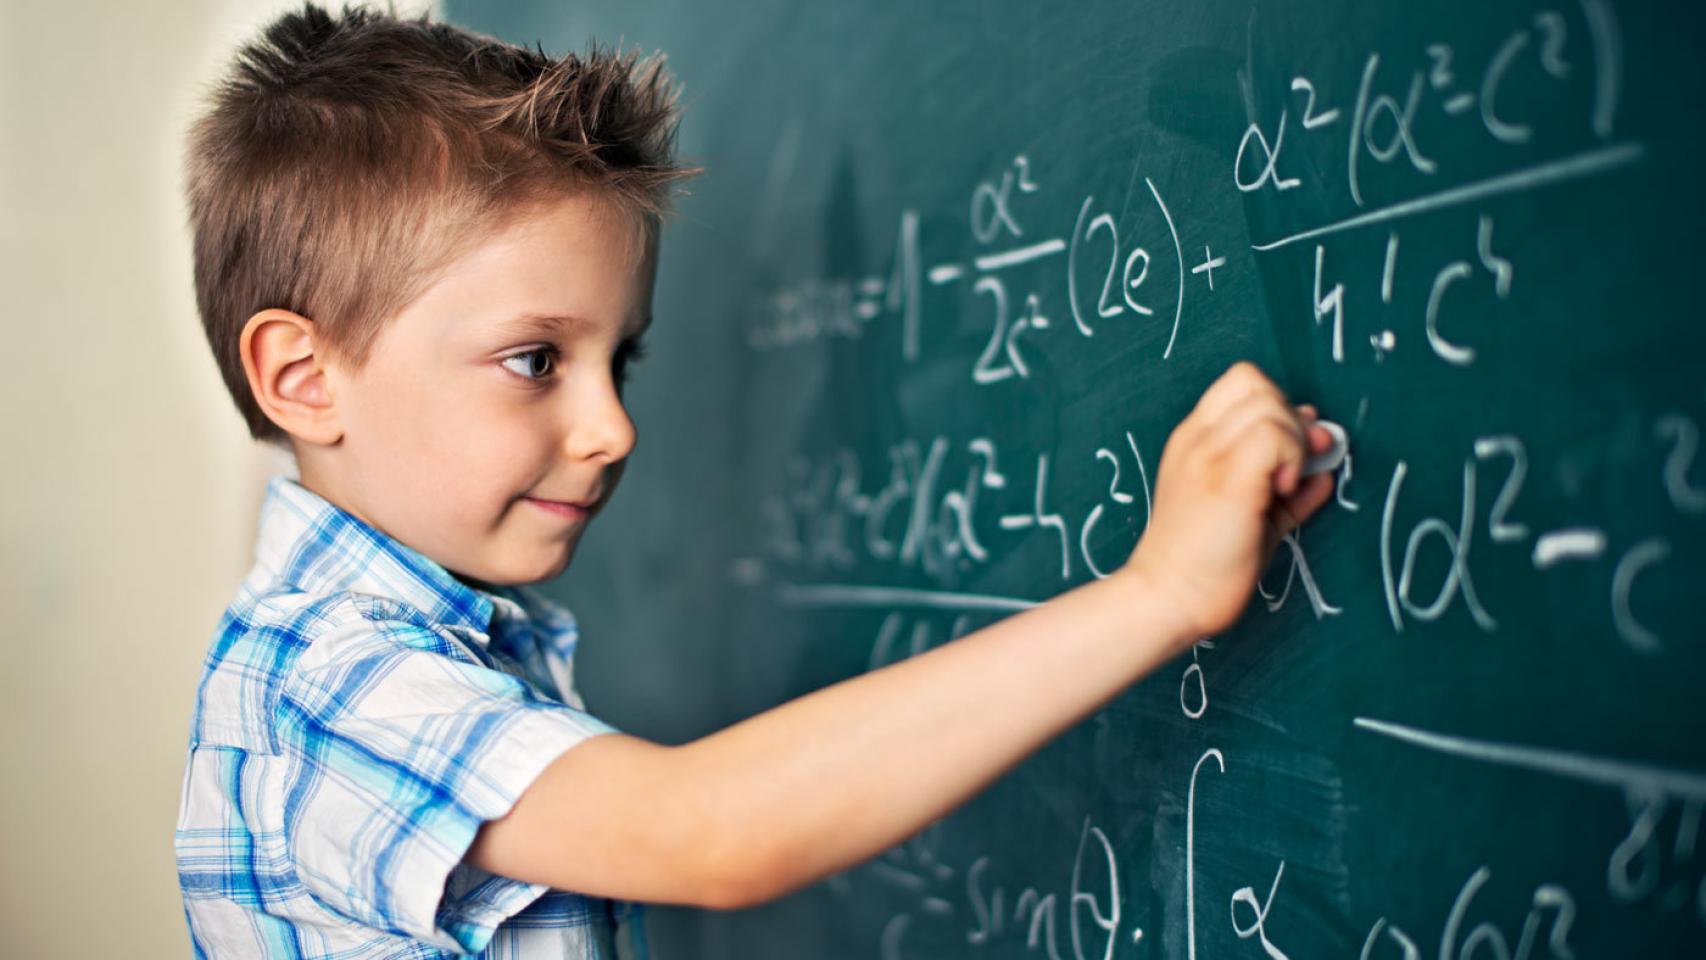 Un niño resuelve una difícil ecuación.